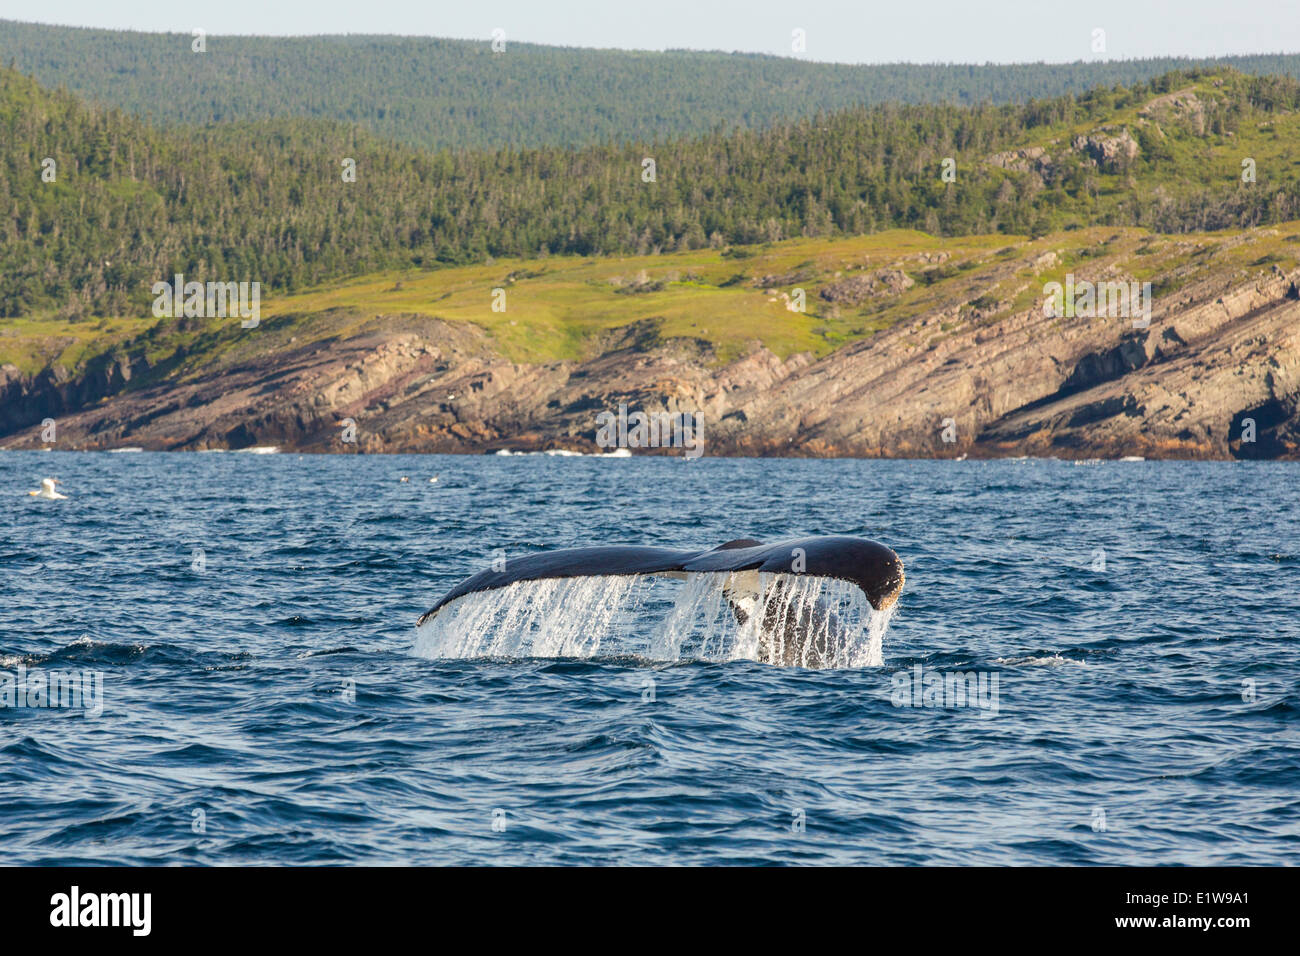 La douve, la baleine à bosse (Megaptera novaeangliae, la réserve écologique de Witless Bay, Newfoundland, Canada Banque D'Images